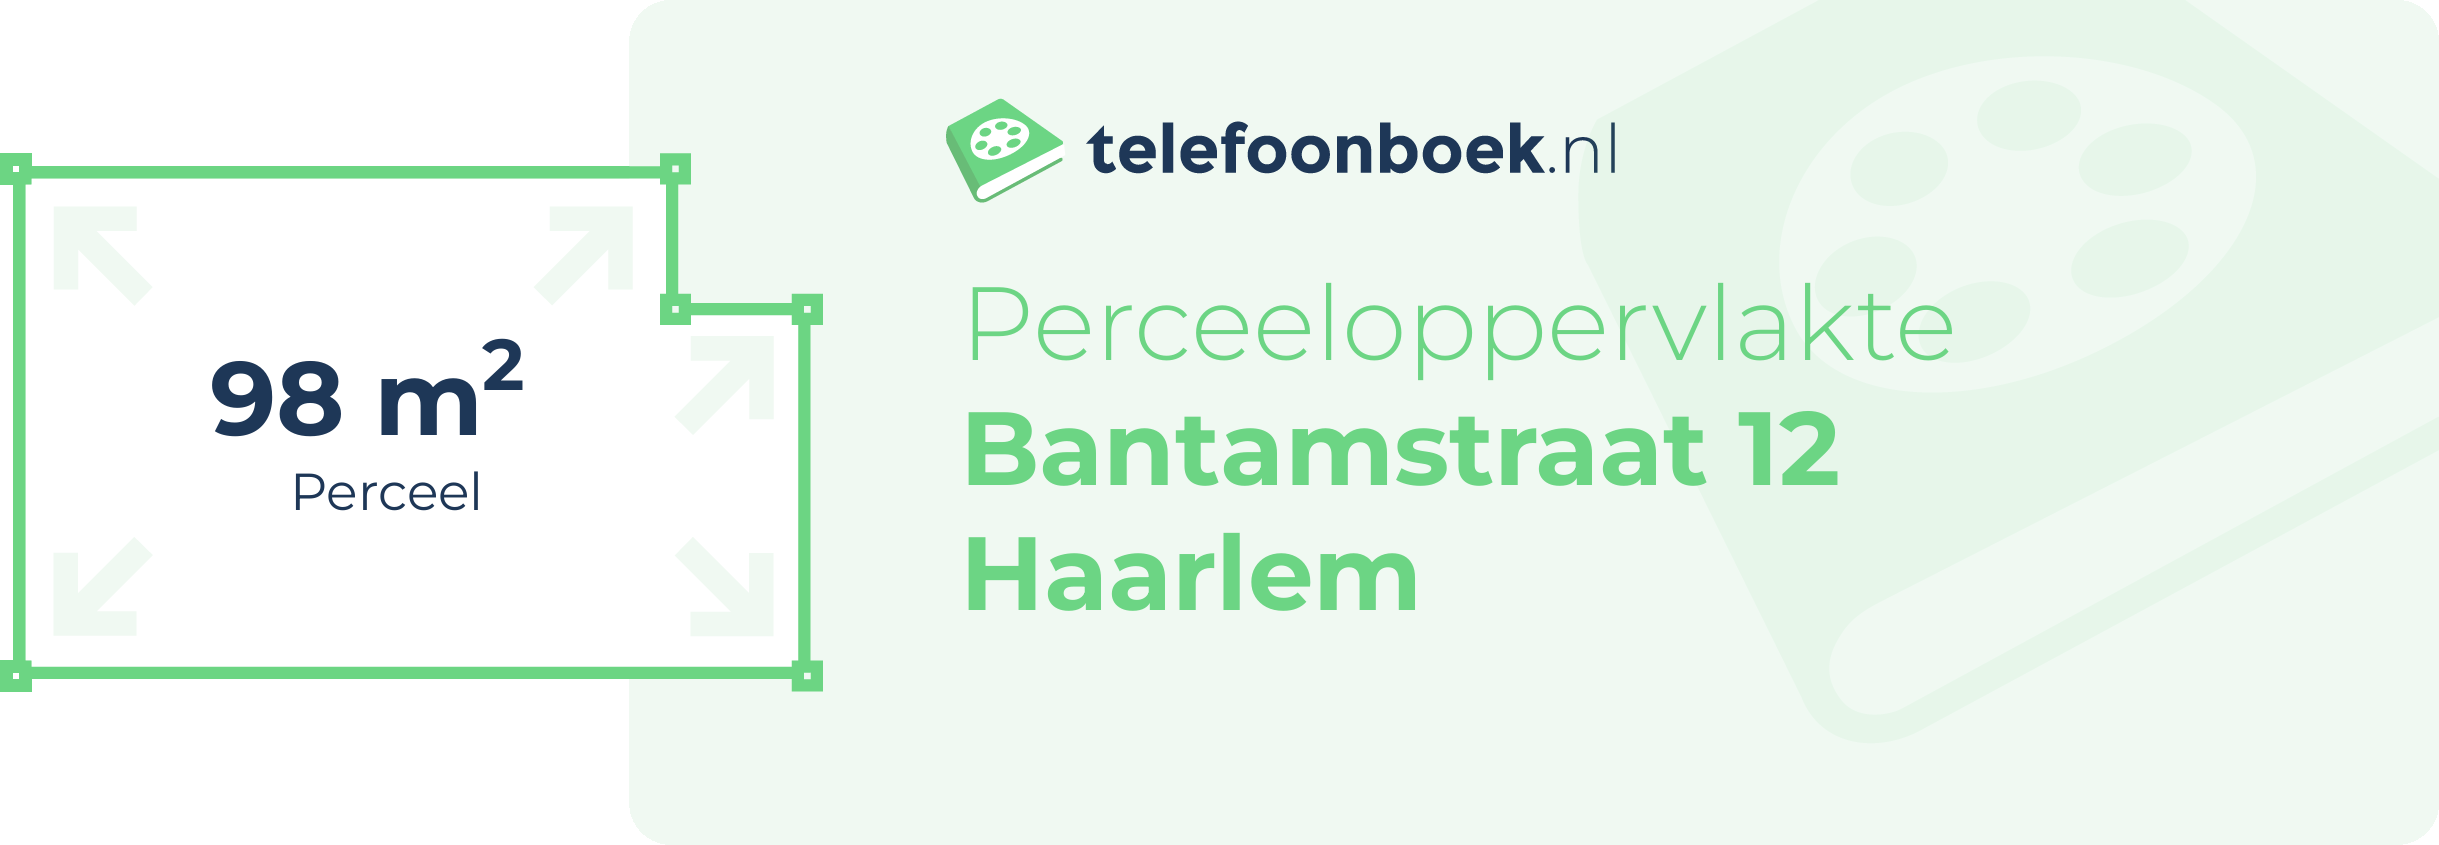 Perceeloppervlakte Bantamstraat 12 Haarlem